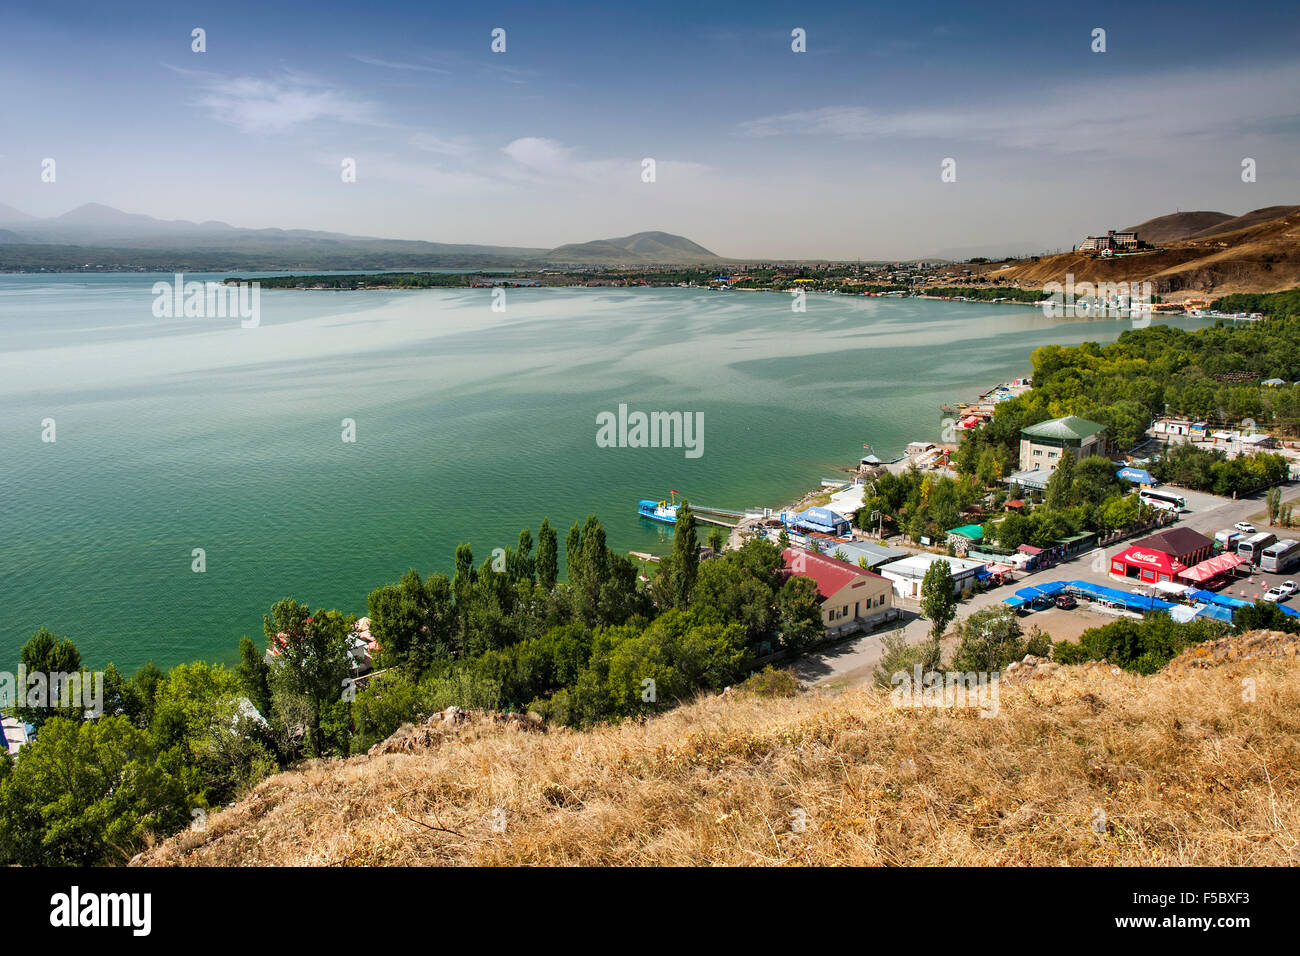 El lago Sevan visto desde el monasterio de Sevanavank en la provincia de Gegharkunik Armenia Foto de stock